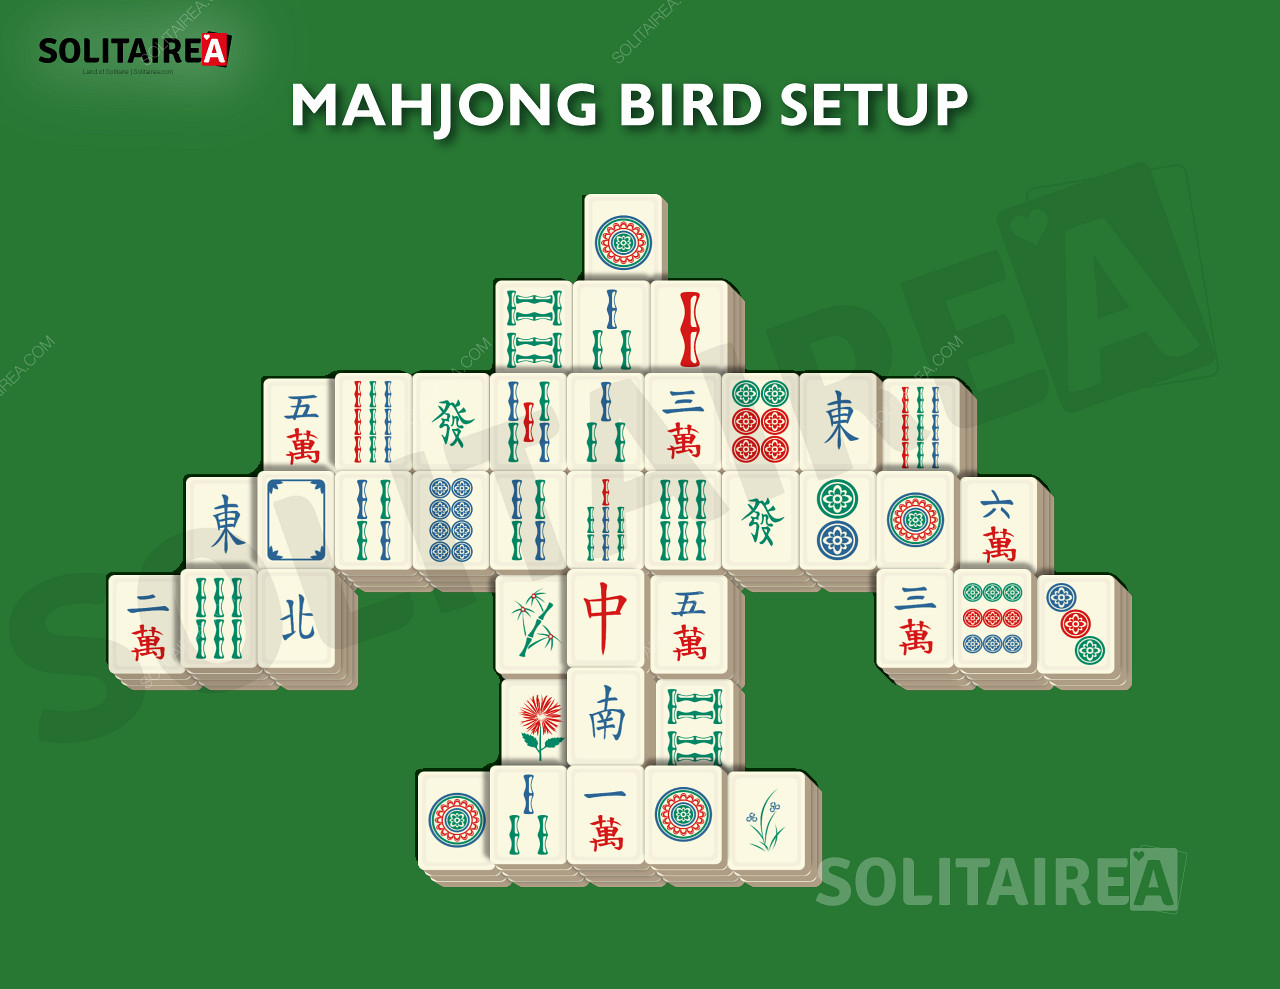 Thiết lập và chiến lược Mahjong Bird